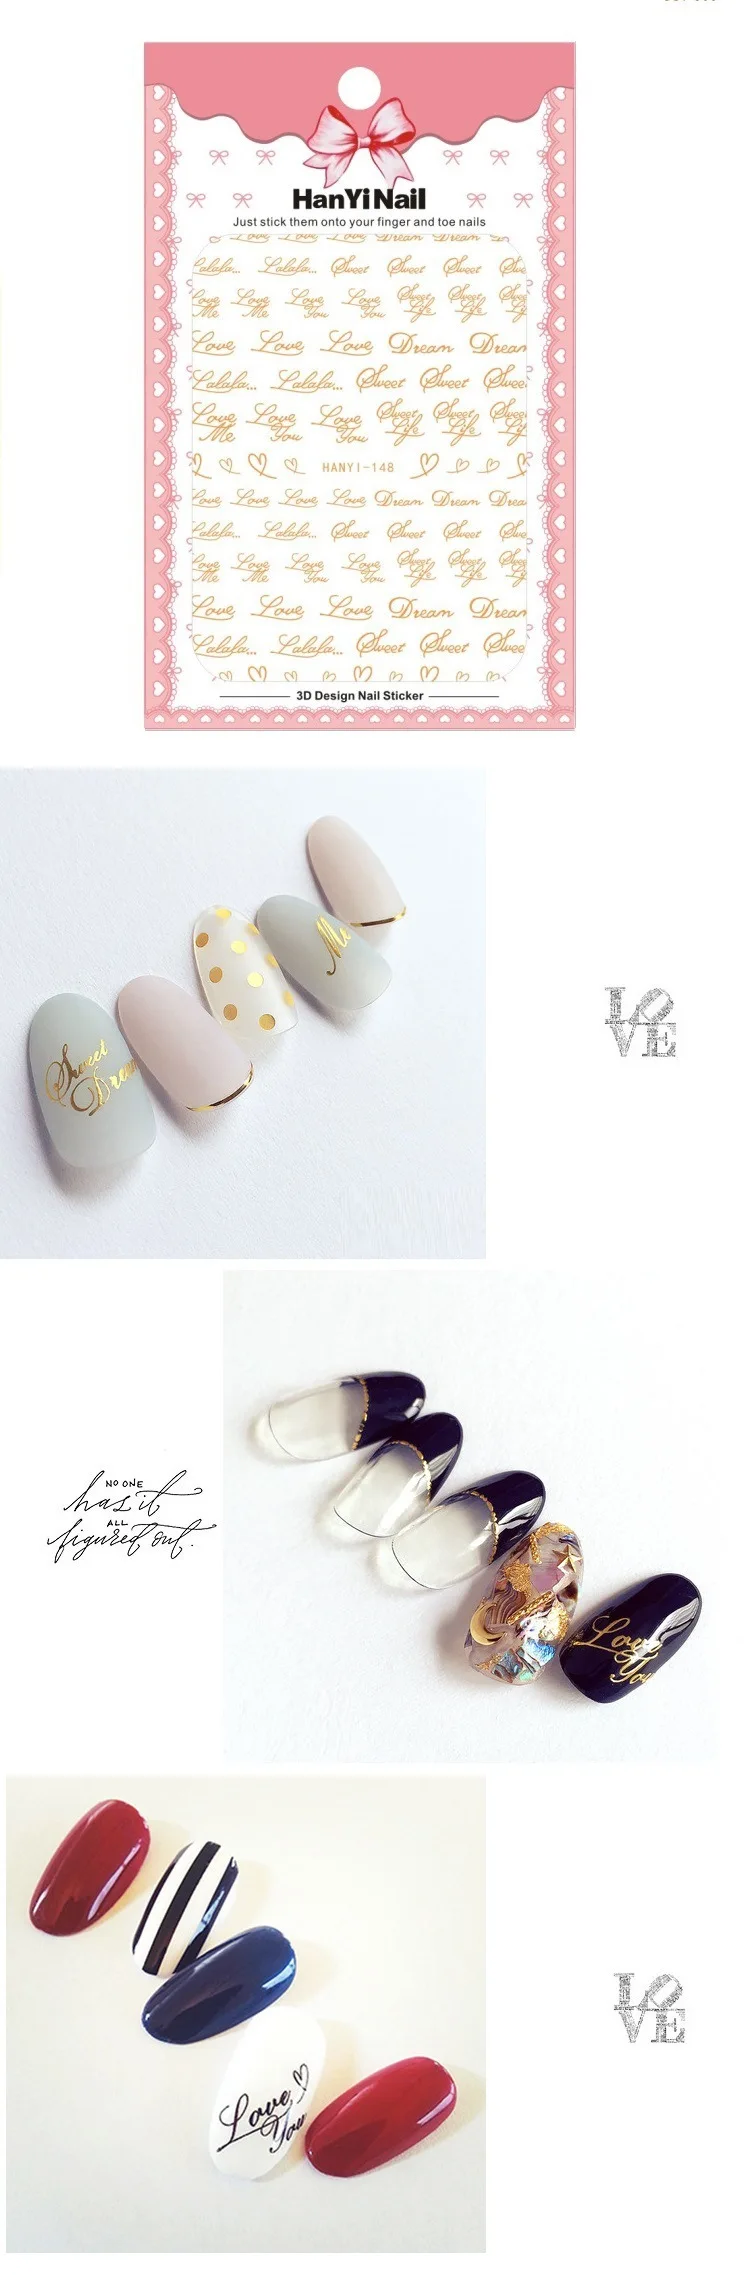 3 листа 6 тип золото ультратонкие наклейки для ногтей дизайн Gummed 3D наклейки для ногтей наклейки Makep художественные украшения HanYi144-149